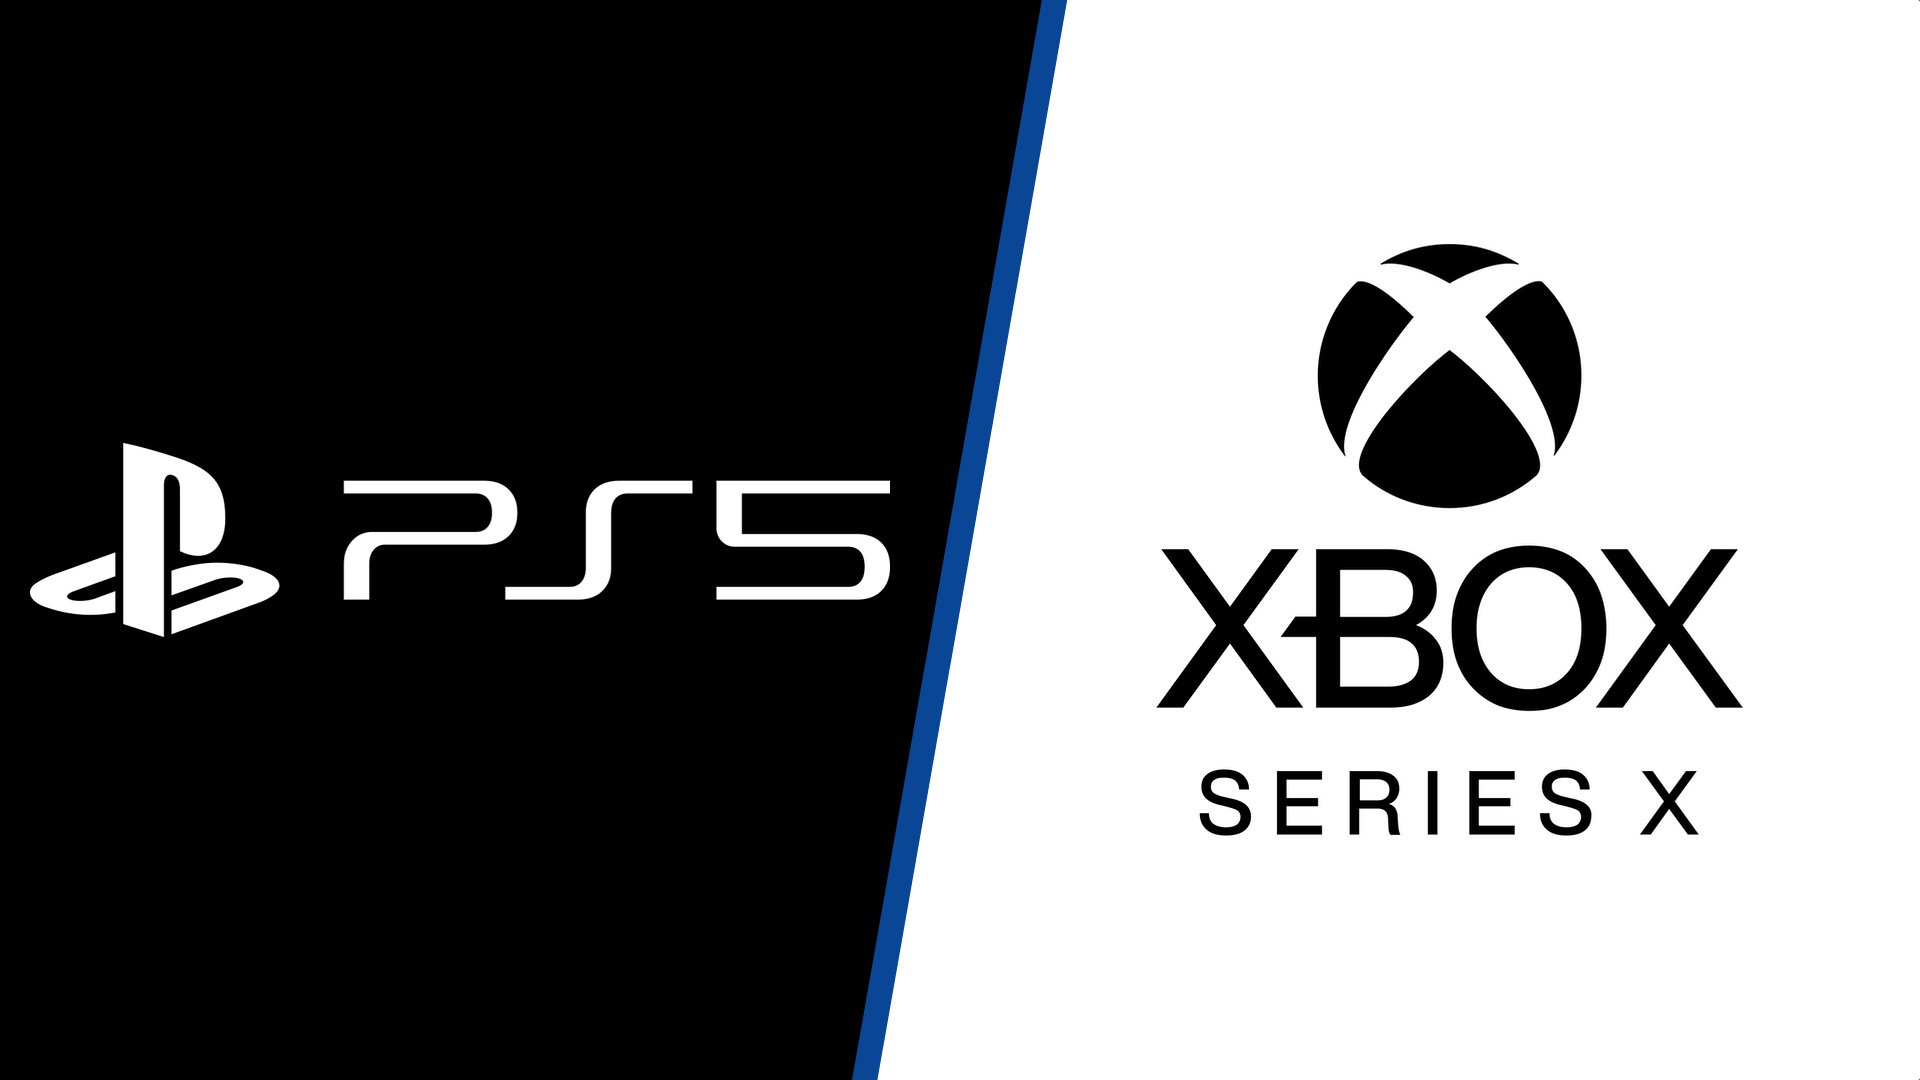 Ps5 Vs Xbox Series X Full Tech Specs Comparison Push Square